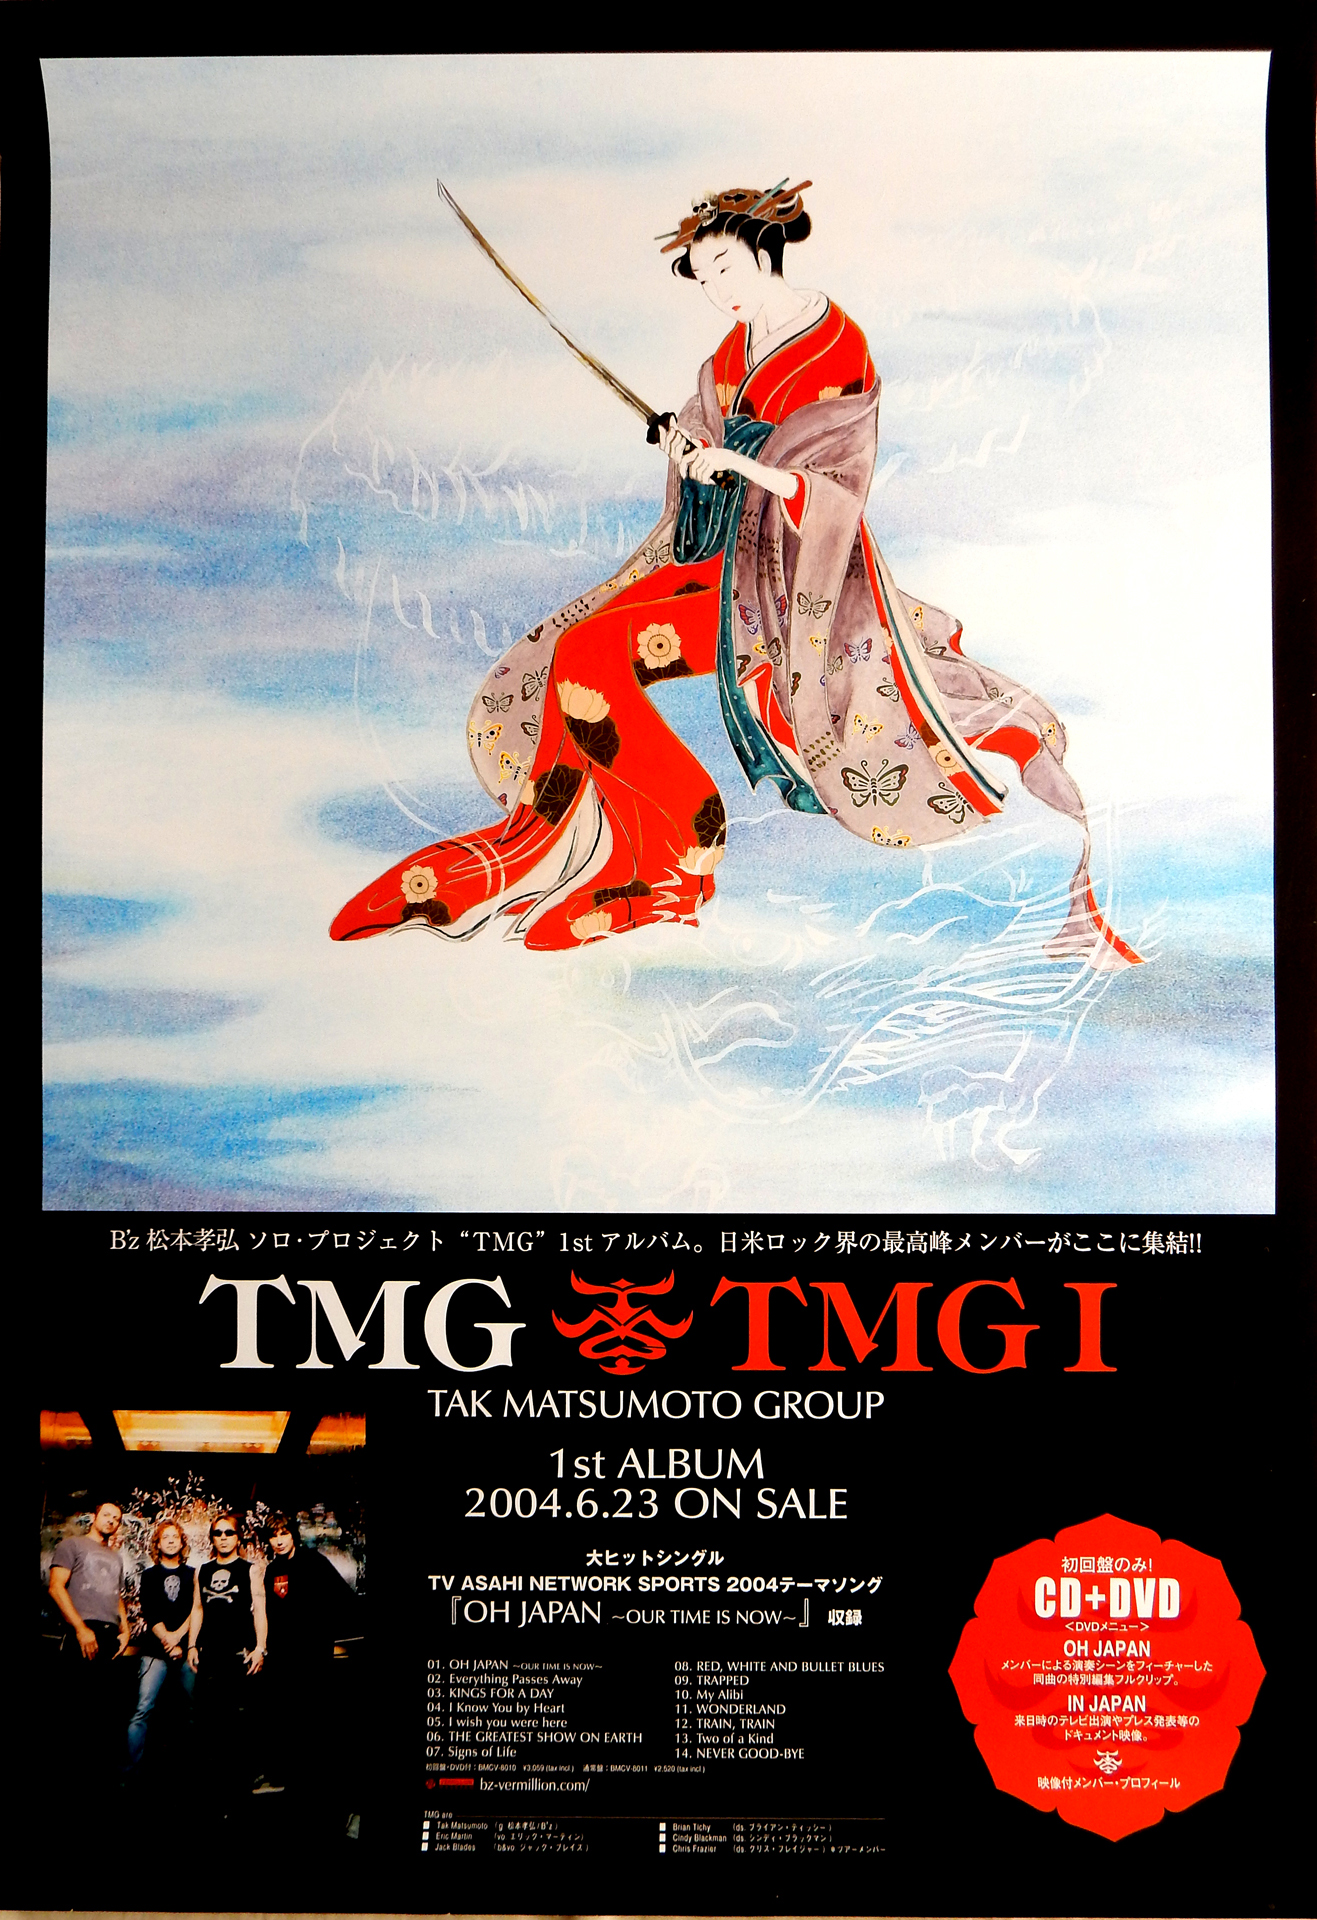 B'z 松本孝弘 ソロ・プロジェクト「TMG」のポスター